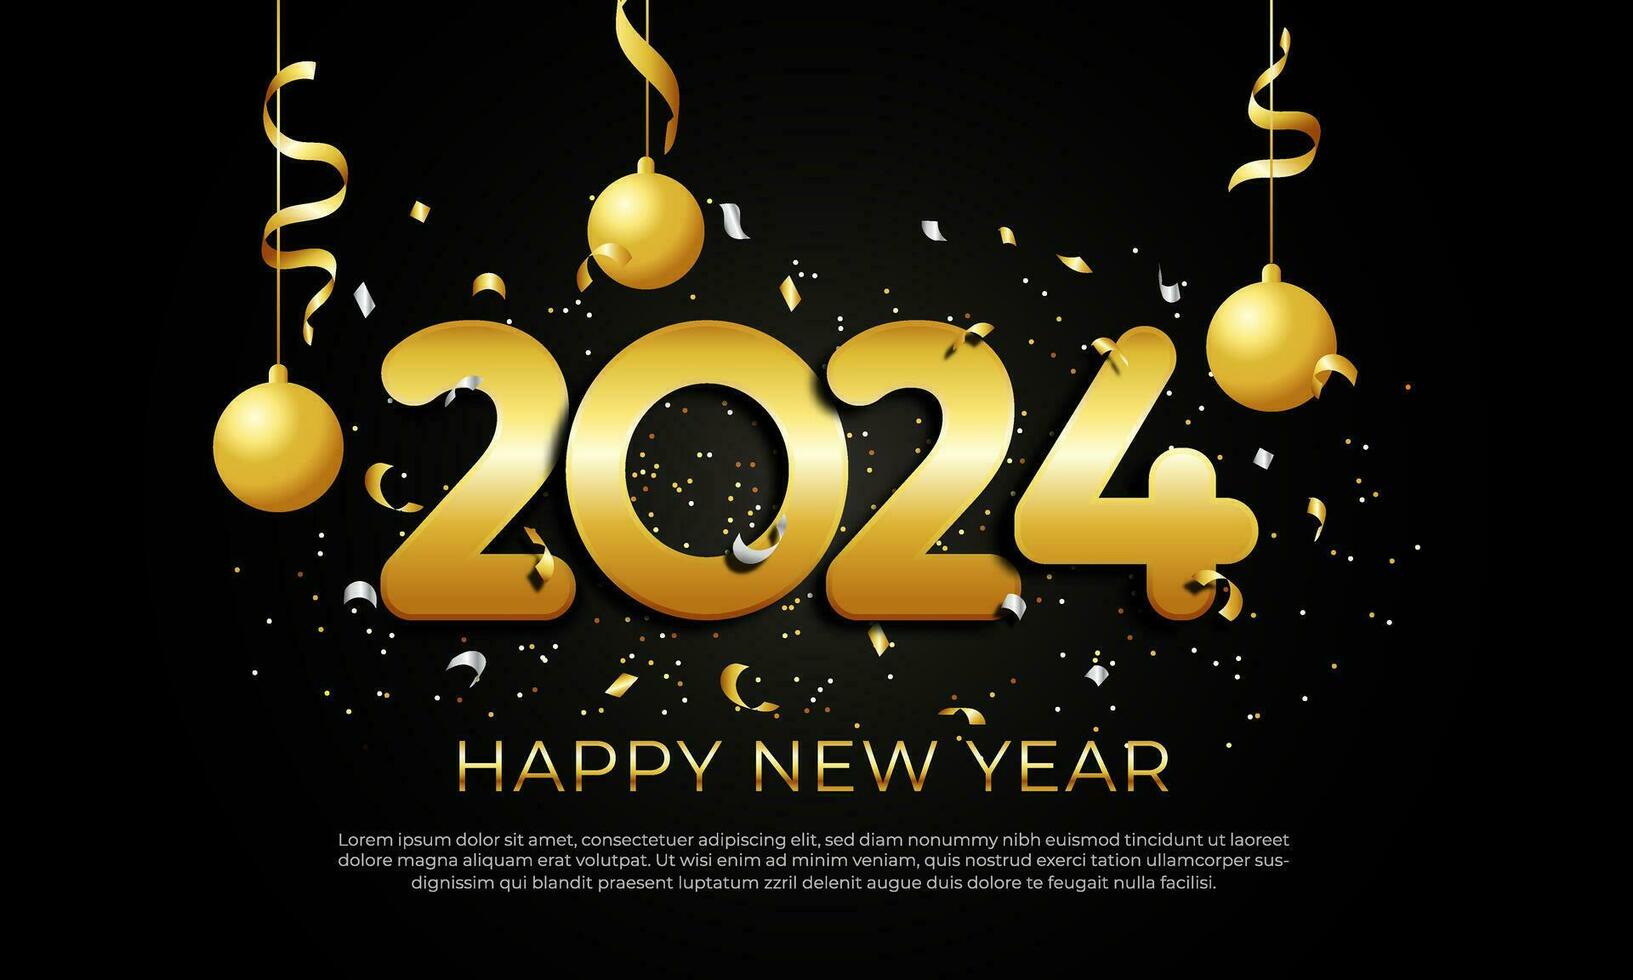 contento nuevo año 2024 con oro número y papel picado diseño en oscuro fondo, adecuado para fiesta pancarta, cartel diseño, saludo tarjeta diseño modelo ilustración vector